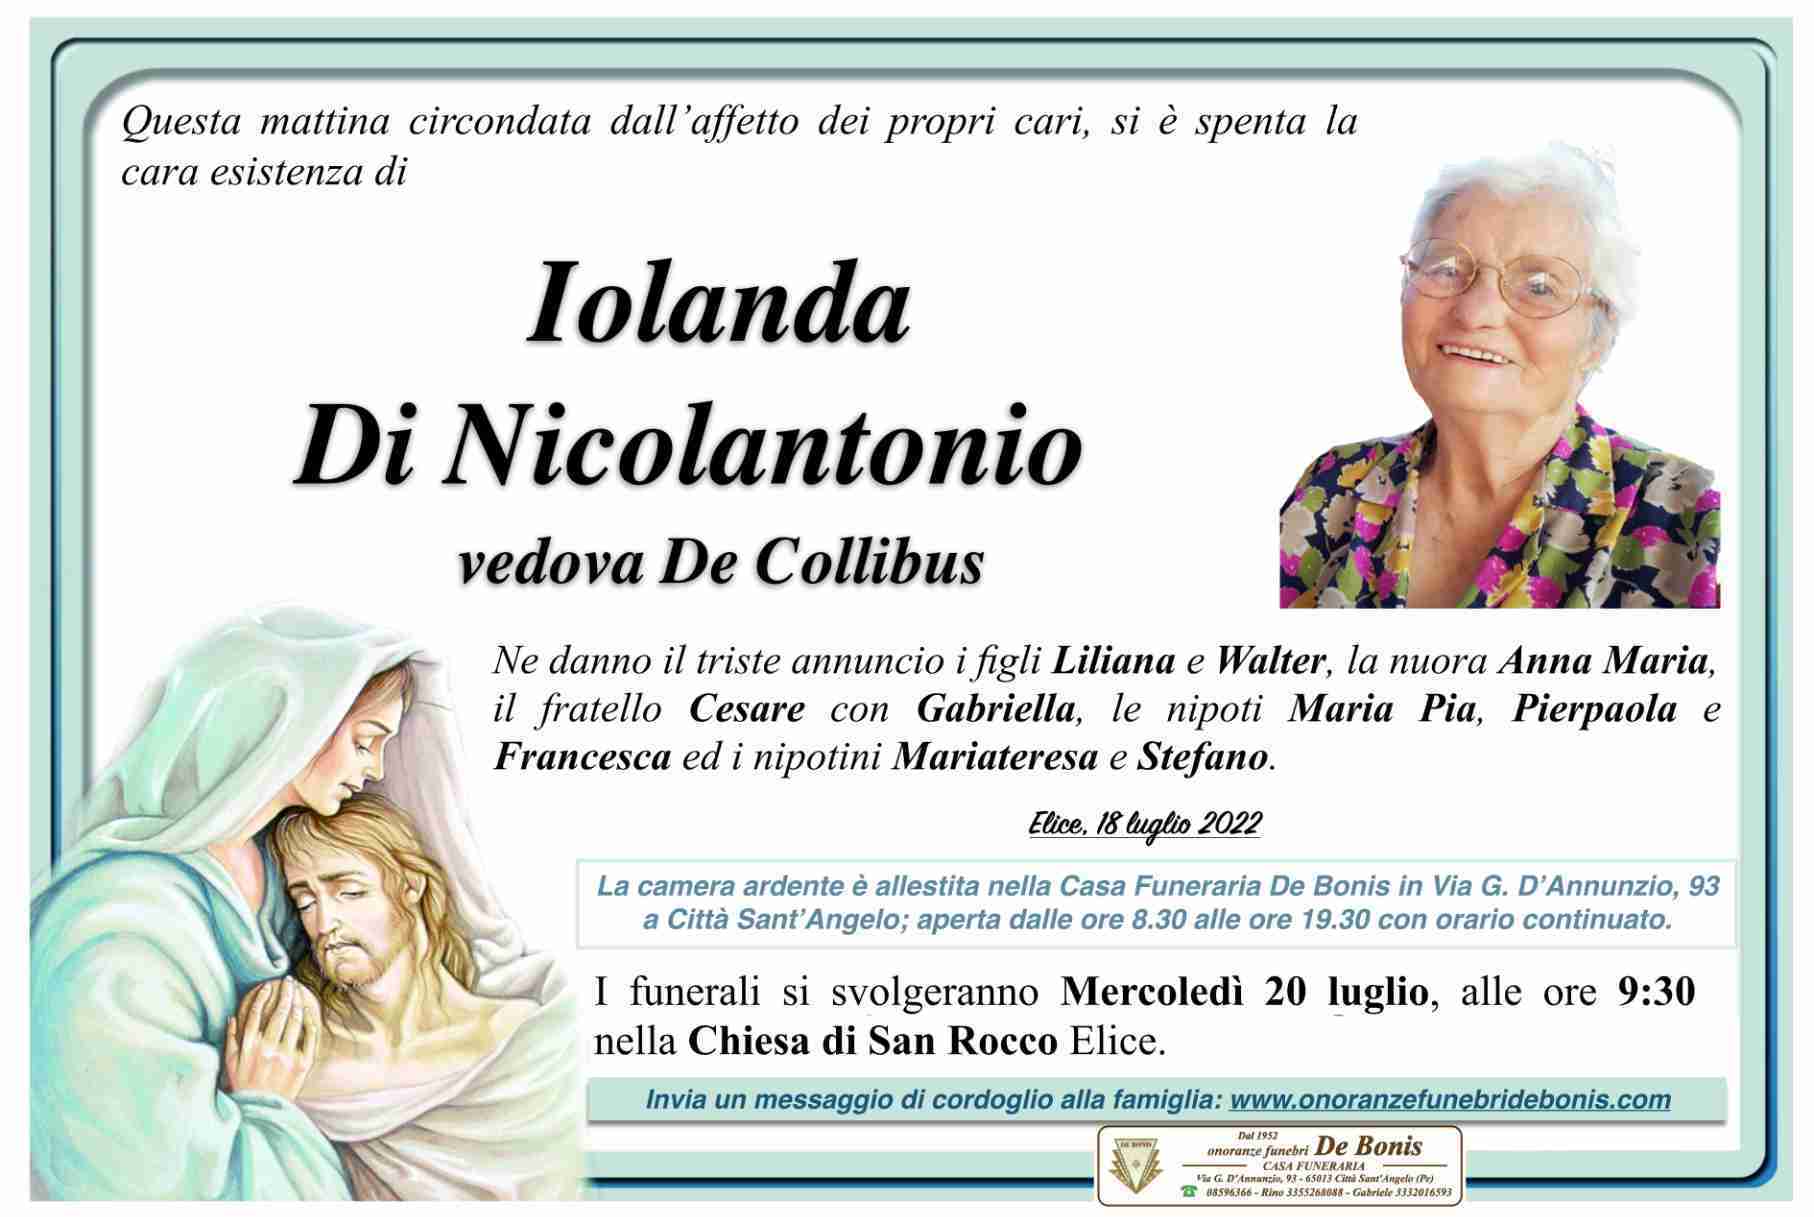 Iolanda Di Nicolantonio